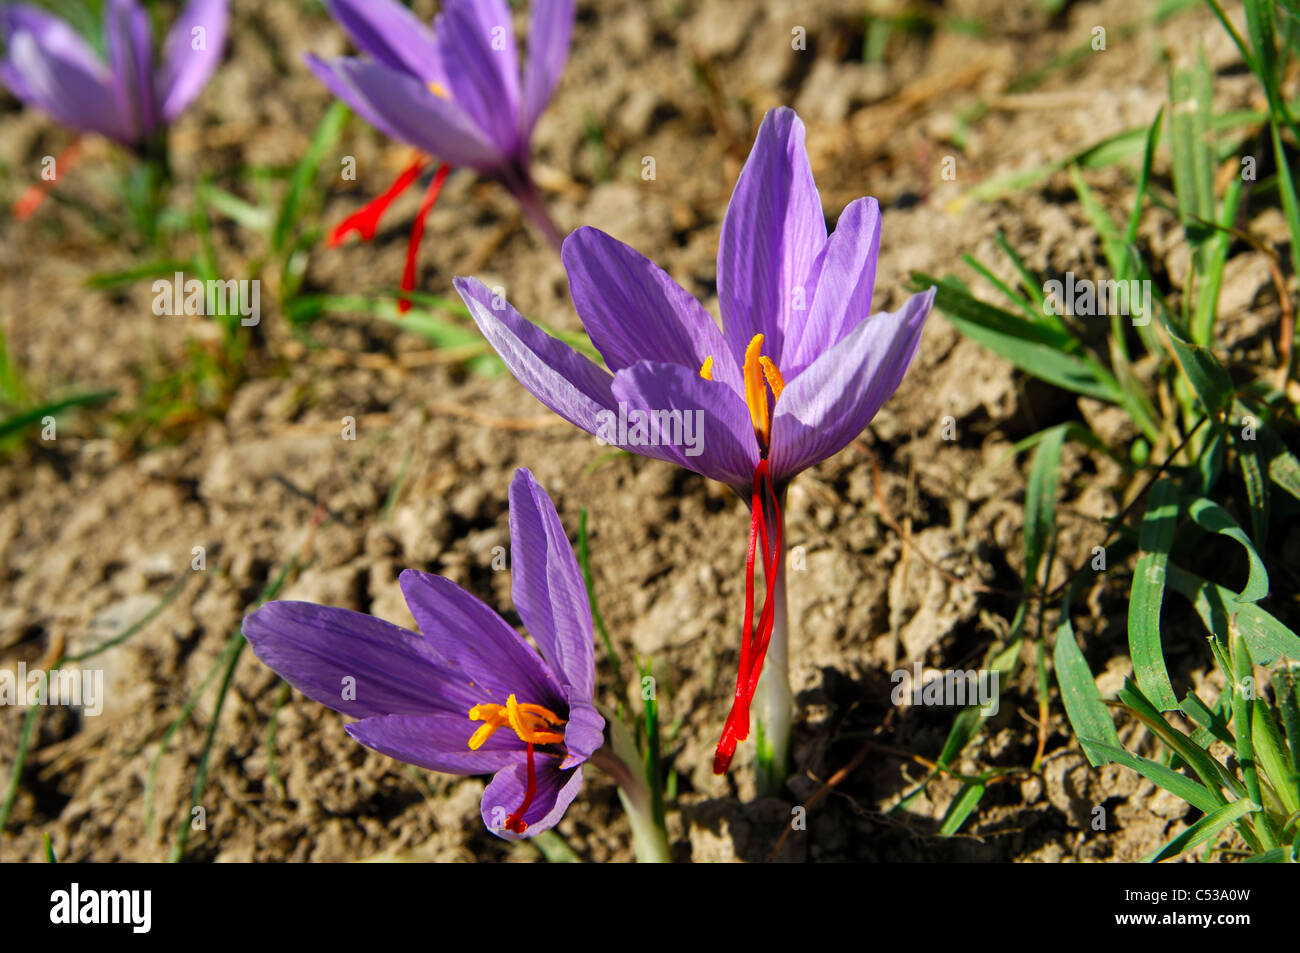 En otoño, las flores, el azafrán azafrán Crocus sativus, con las típicas tres estigmas de color rojo vivo, Mund, Valais, Suiza Foto de stock